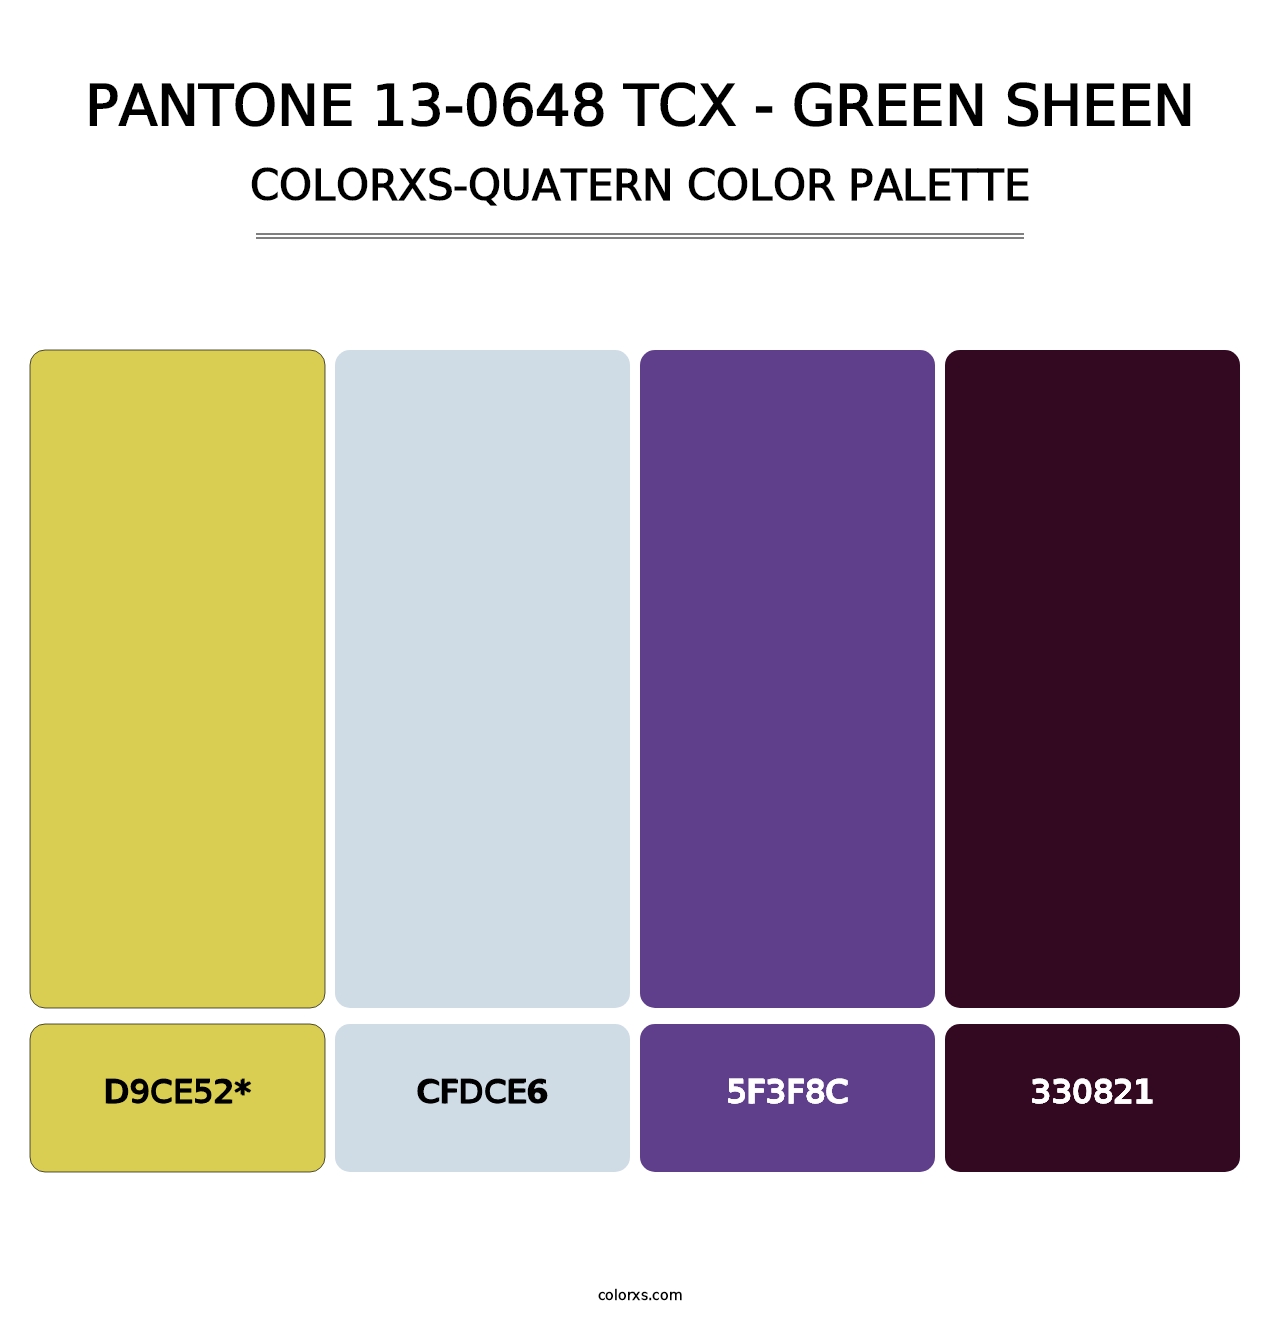 PANTONE 13-0648 TCX - Green Sheen - Colorxs Quatern Palette